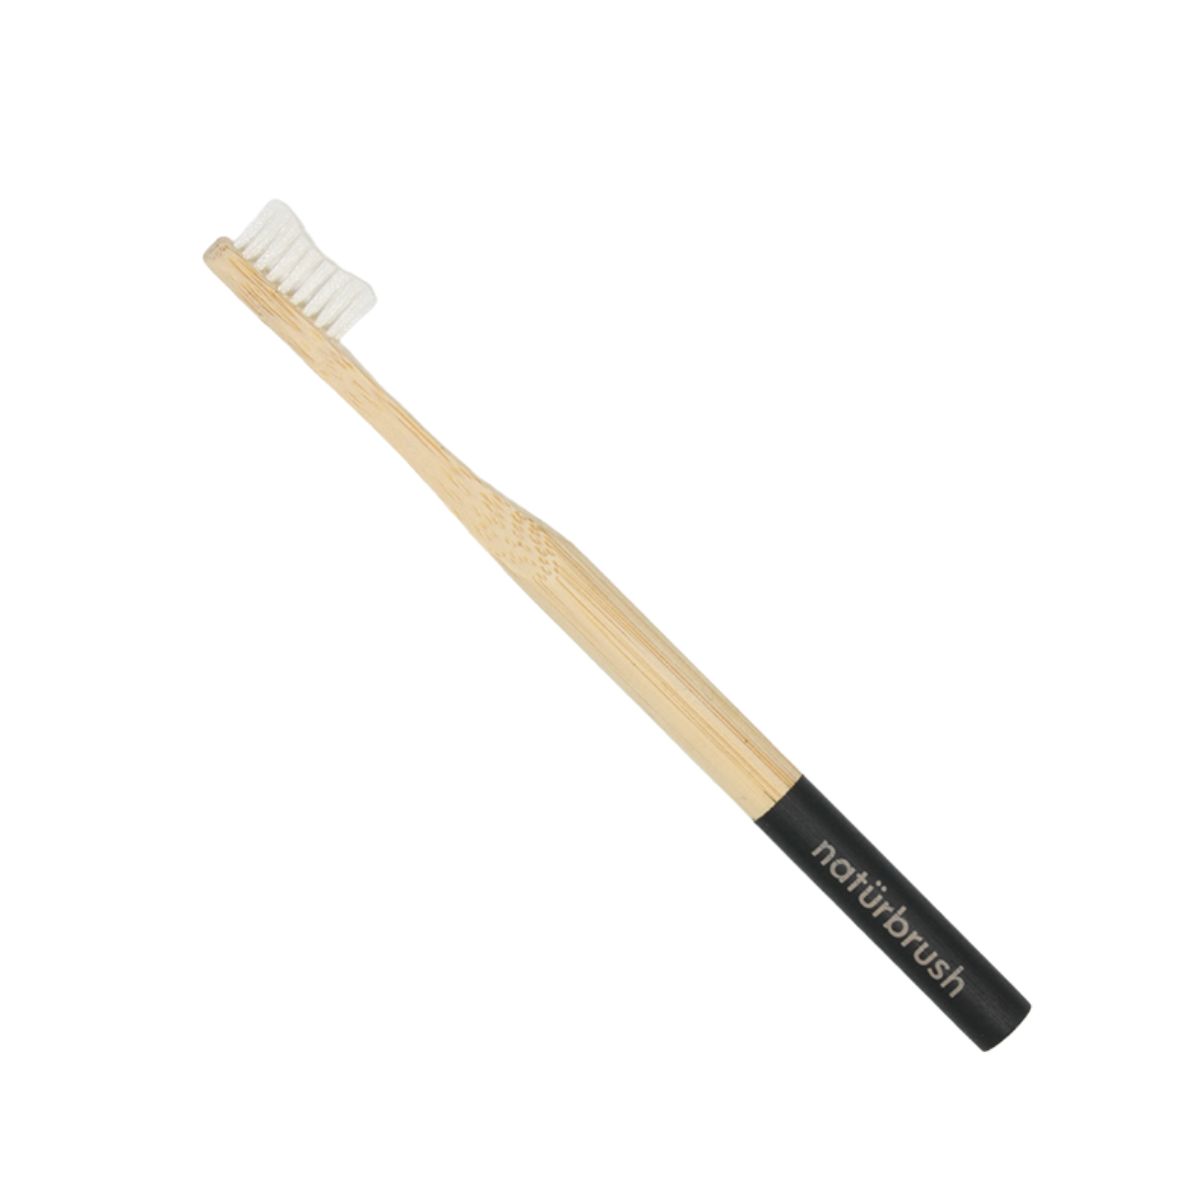 Cepilo de dientes de bambu adultos negro marca